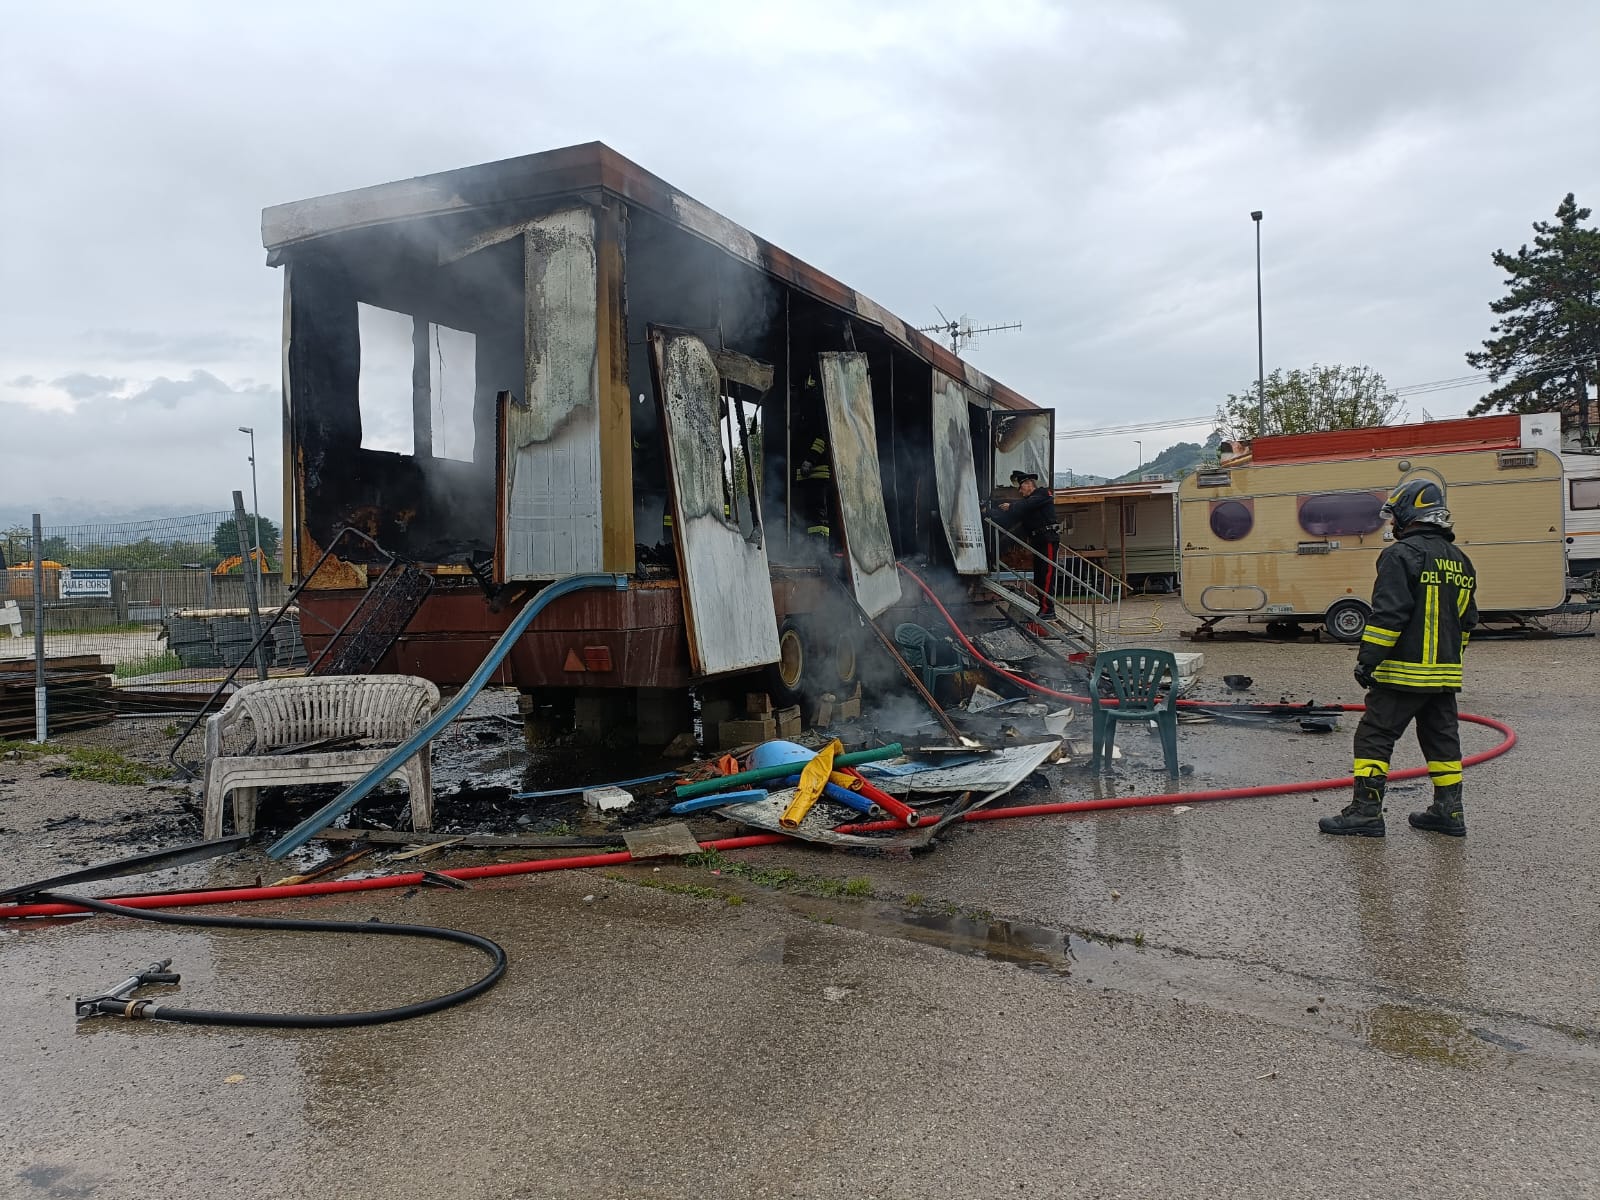 Incendio in zona industriale a Castelnuovo Vomano: vigili del fuoco intervengono per spegnere le fiamme su roulotte